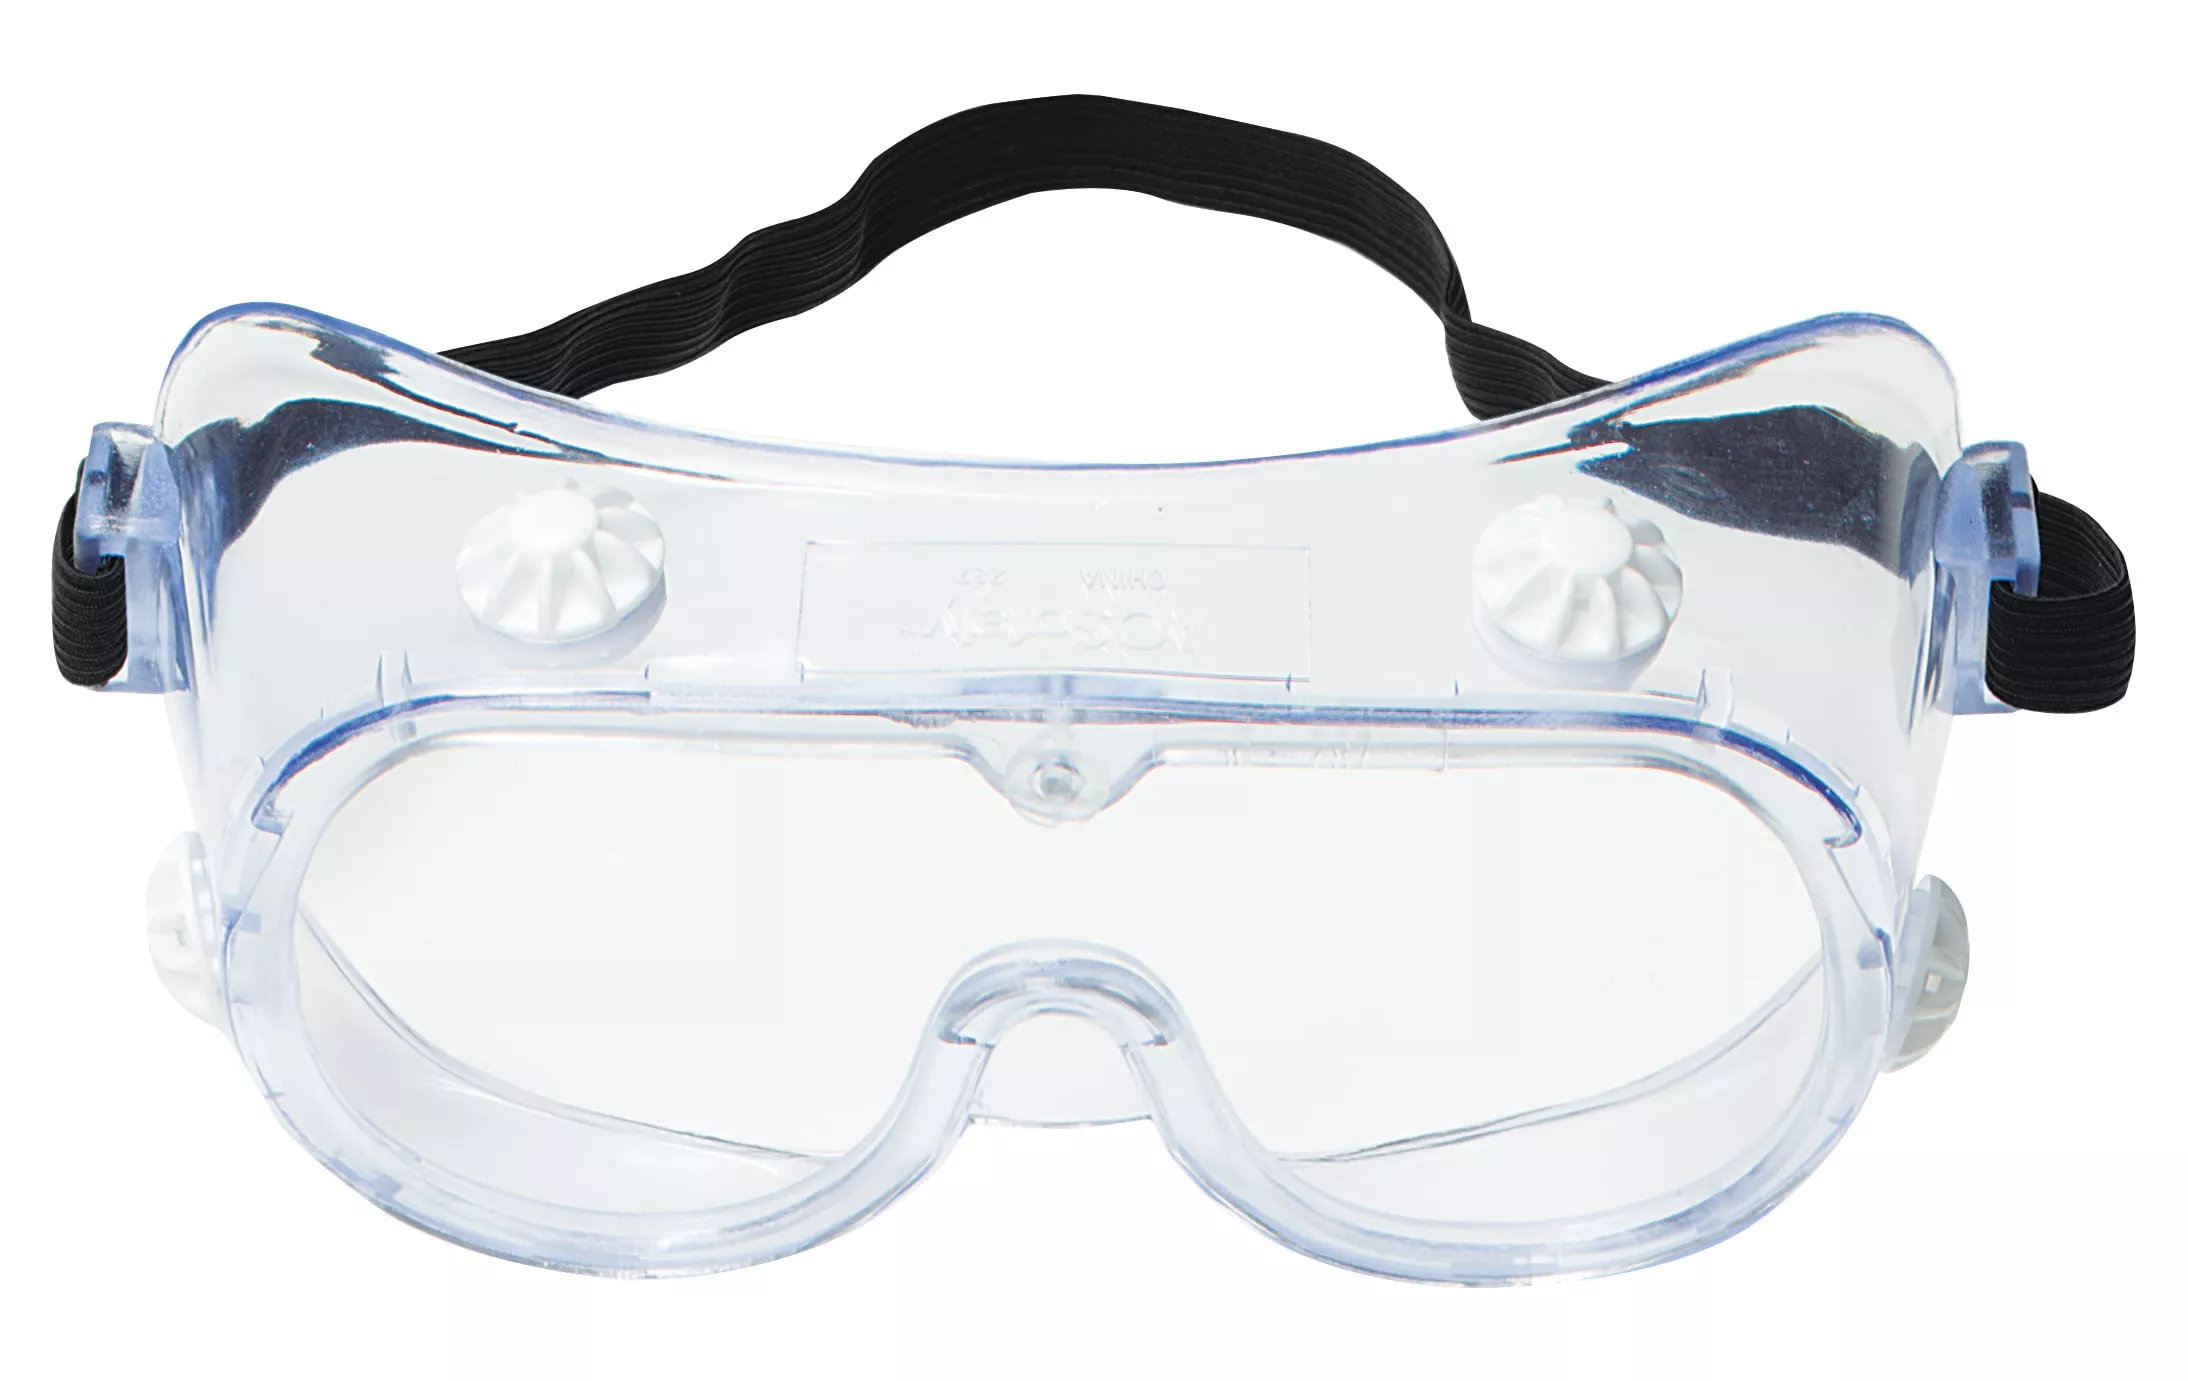 3M™ 334 Splash Safety Goggles Anti-Fog 40661-00000-10, Clear Anti Fog
Lens, 10 EA/Case